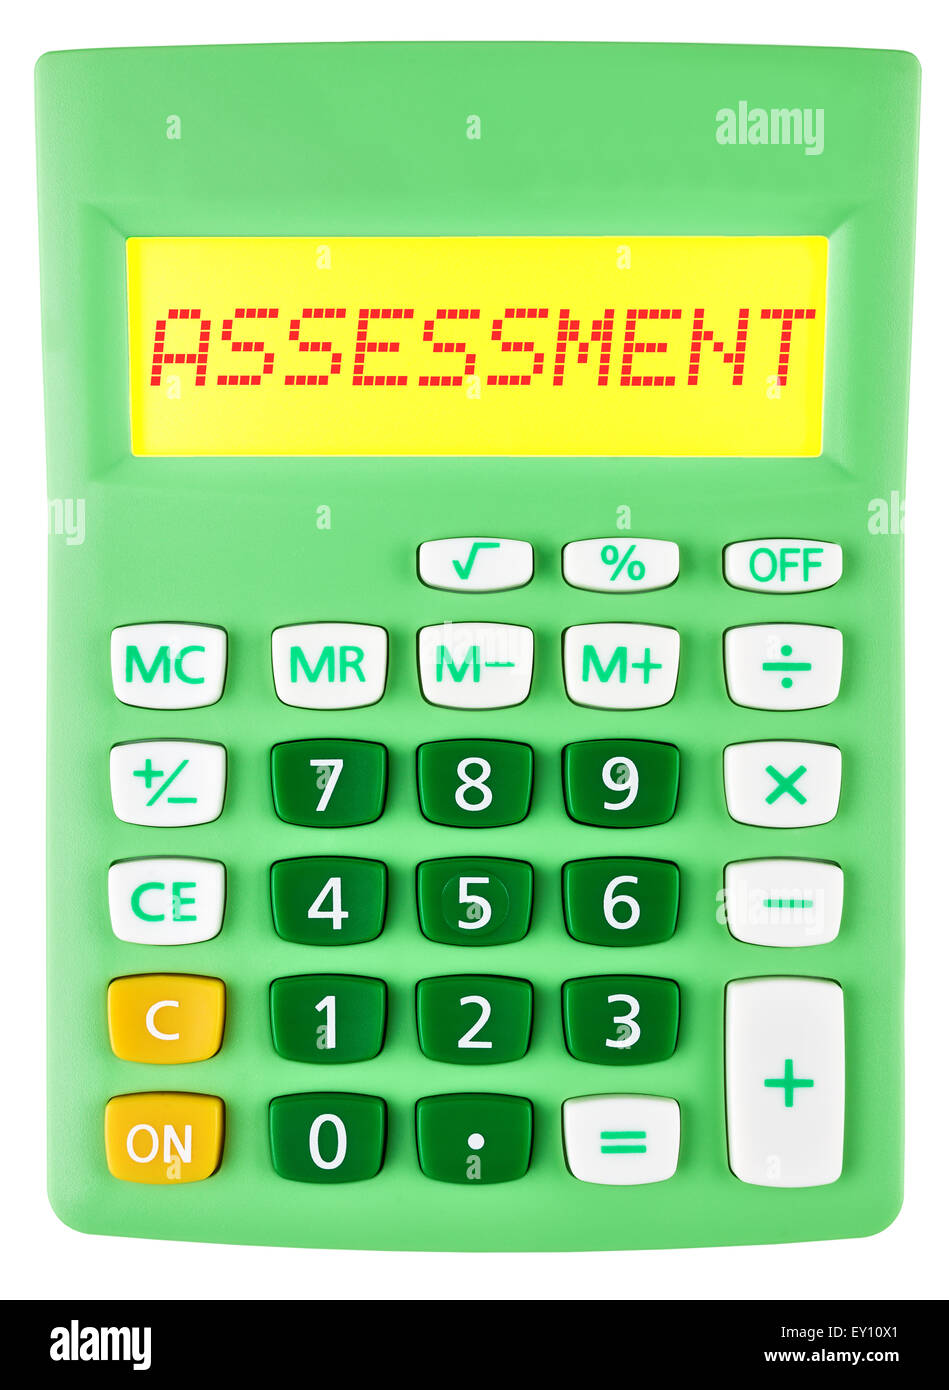 Calculatrice avec affichage sur l'évaluation Banque D'Images